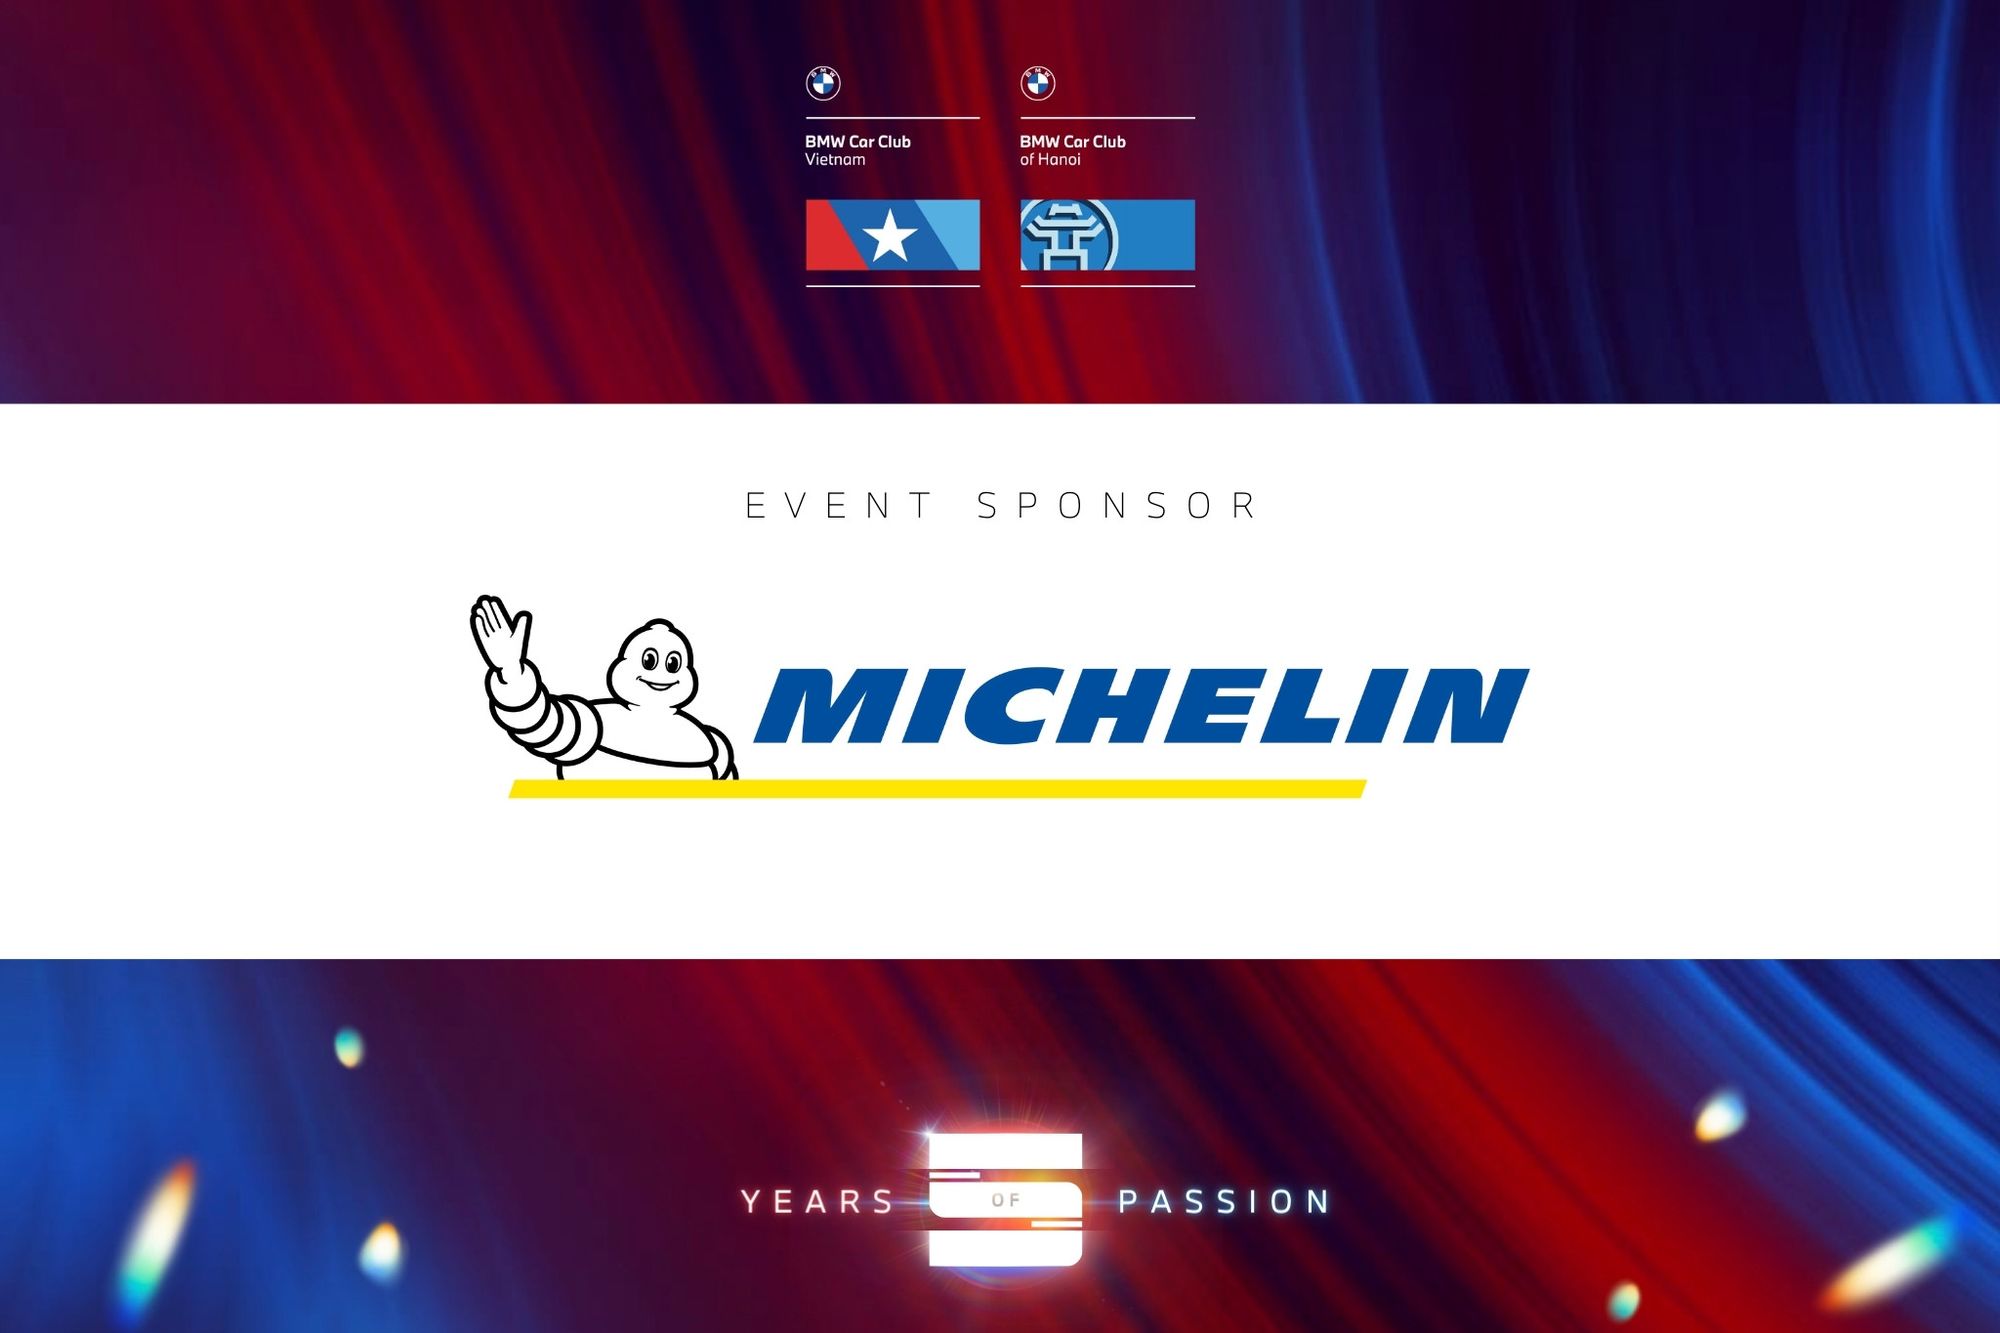 Kỷ niệm 5 năm BMW Club of Hanoi: Michelin tài trợ quà cho người tham gia và Giải bốc thăm giá trị